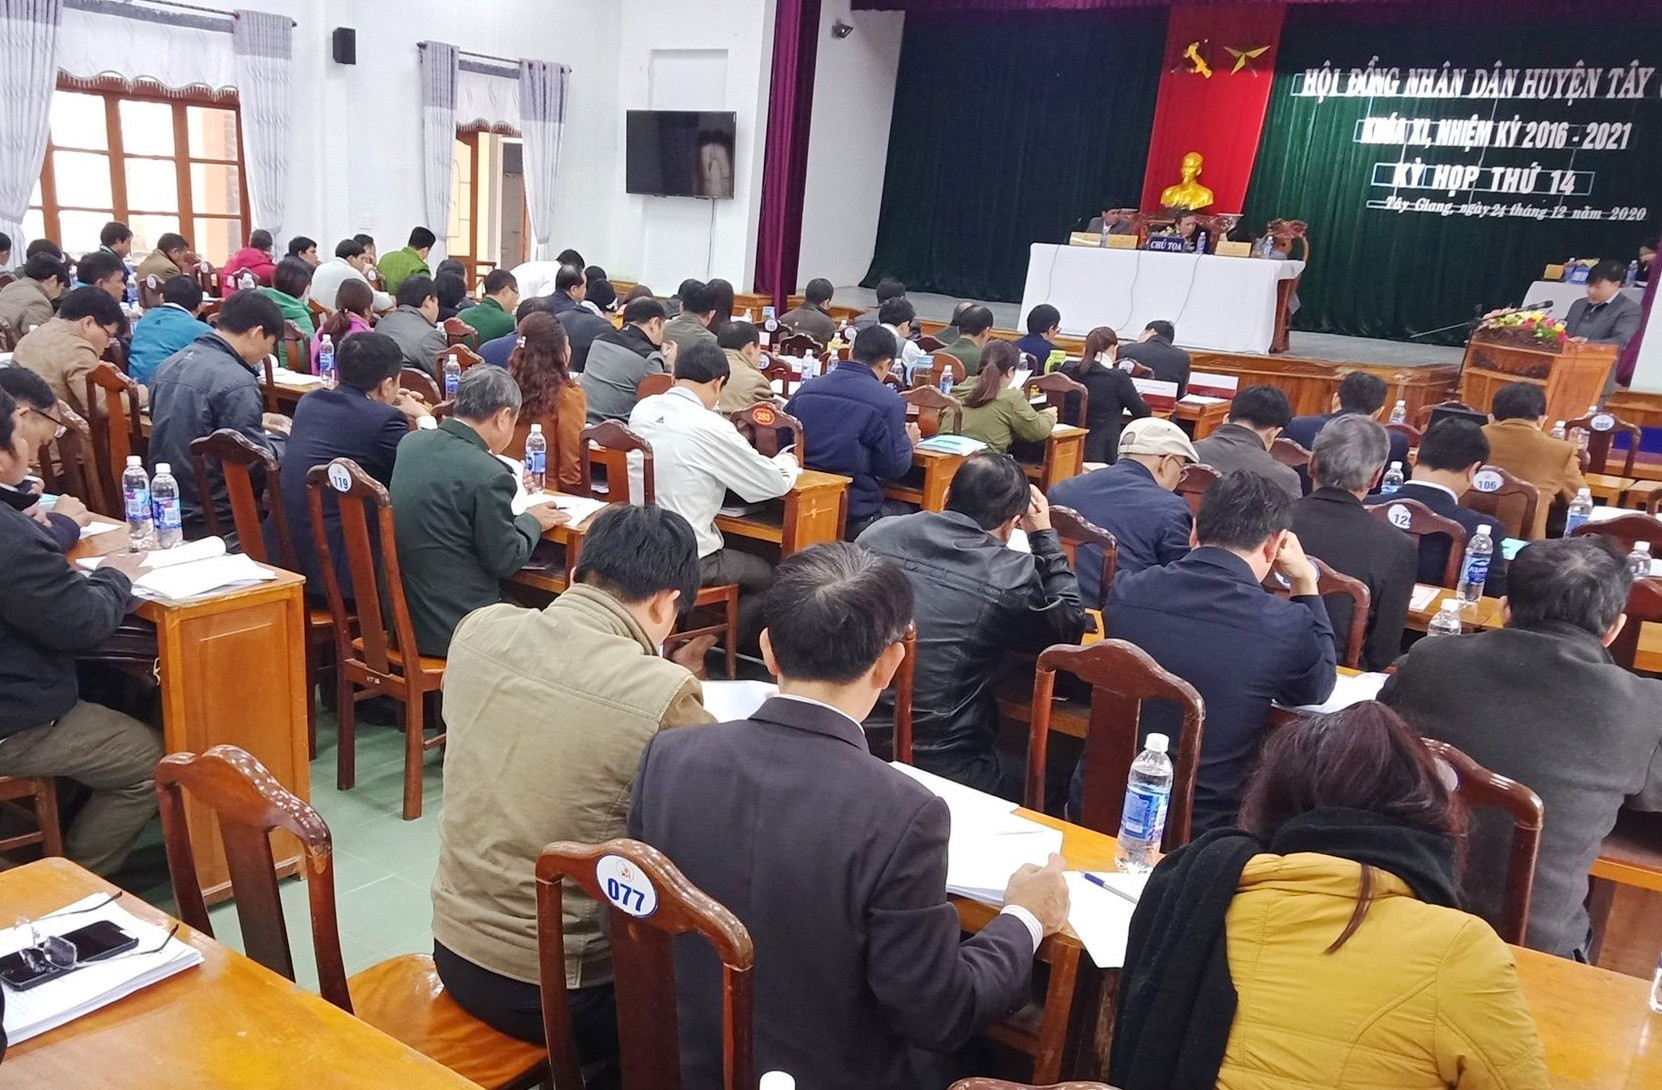 ĐND huyện Tây Giang tổ chức kỳ họp lần thứ 14, khóa XI, nhiệm kỳ 2016-2021.